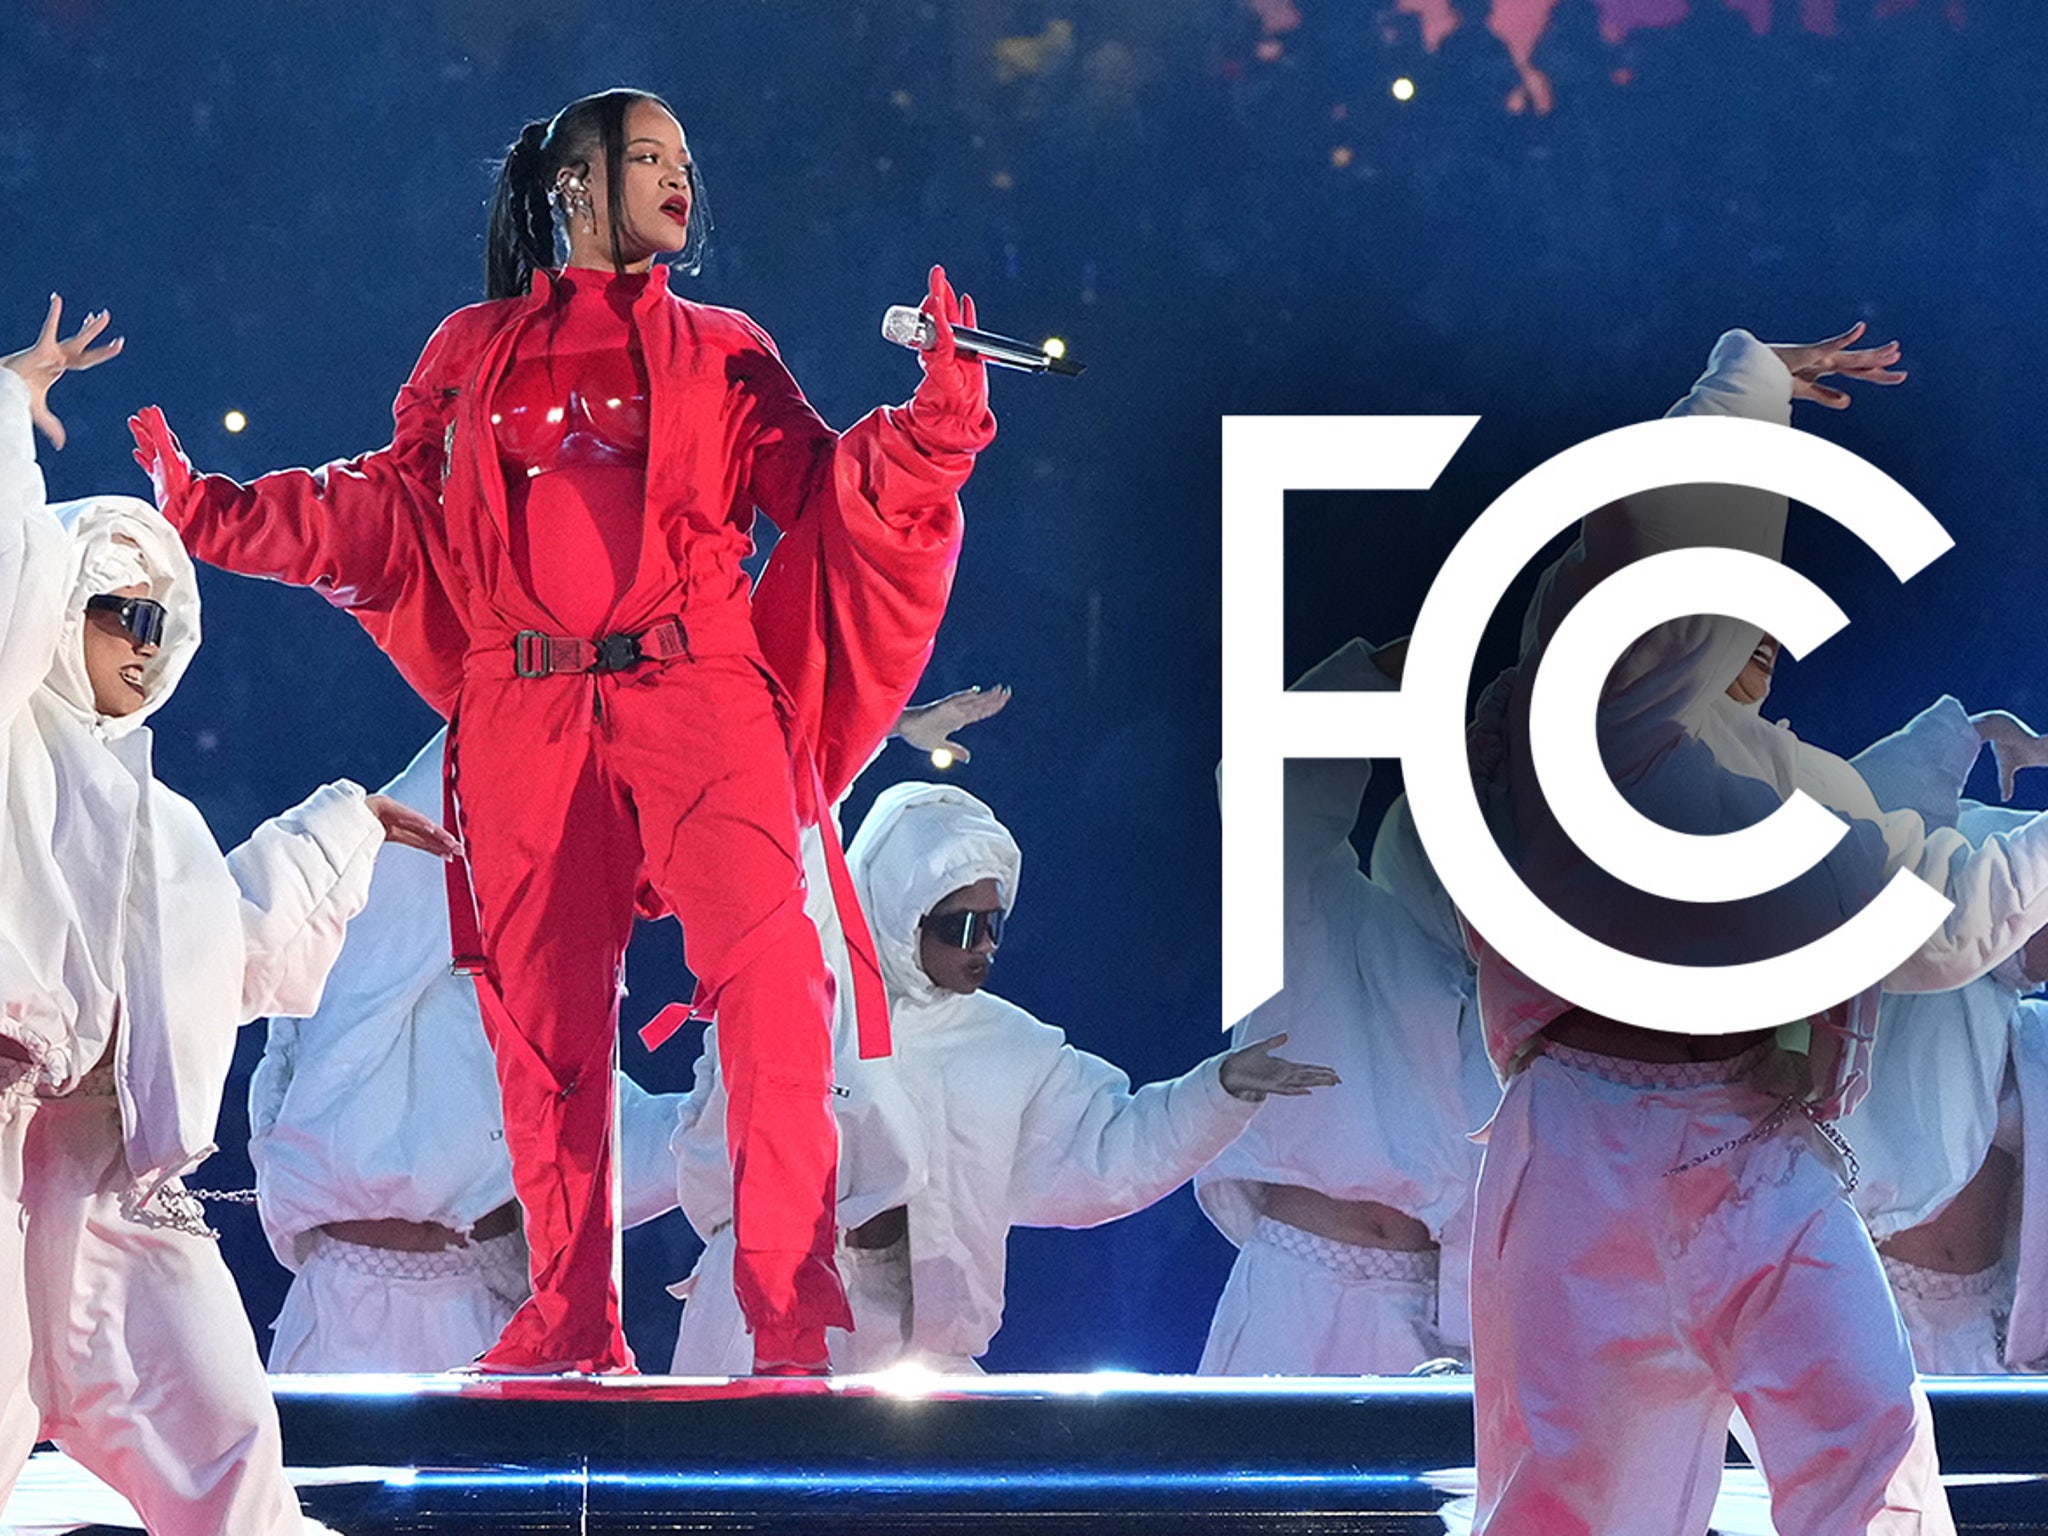 Porno Rihana 2019 - Rihanna's Super Bowl Halftime Show Generates 103 FCC Complaints For Being  Too Sexual